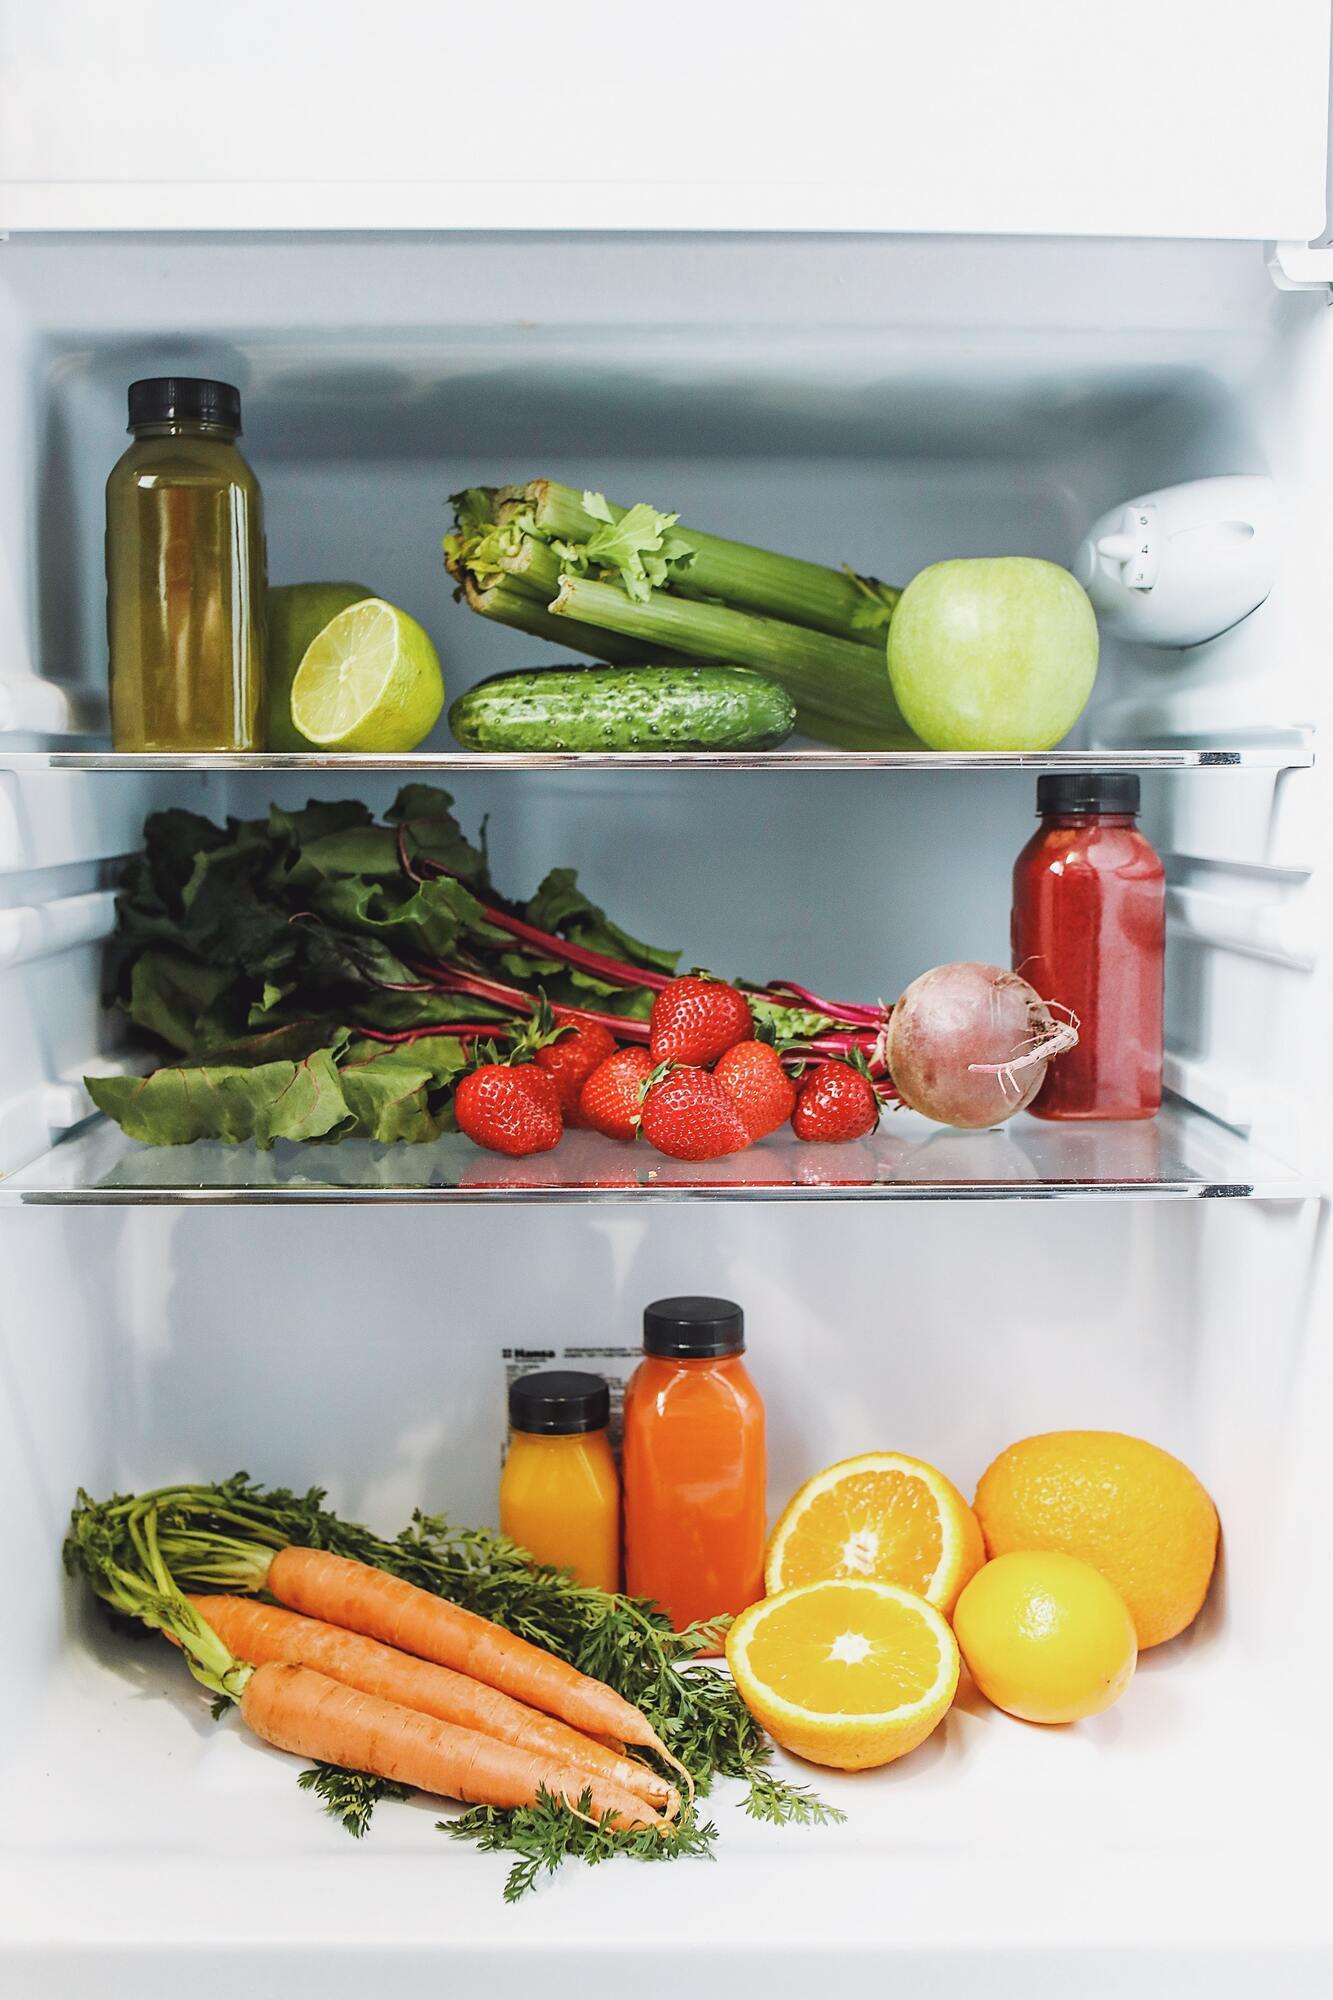 Как правильно хранить продукты в холодильнике